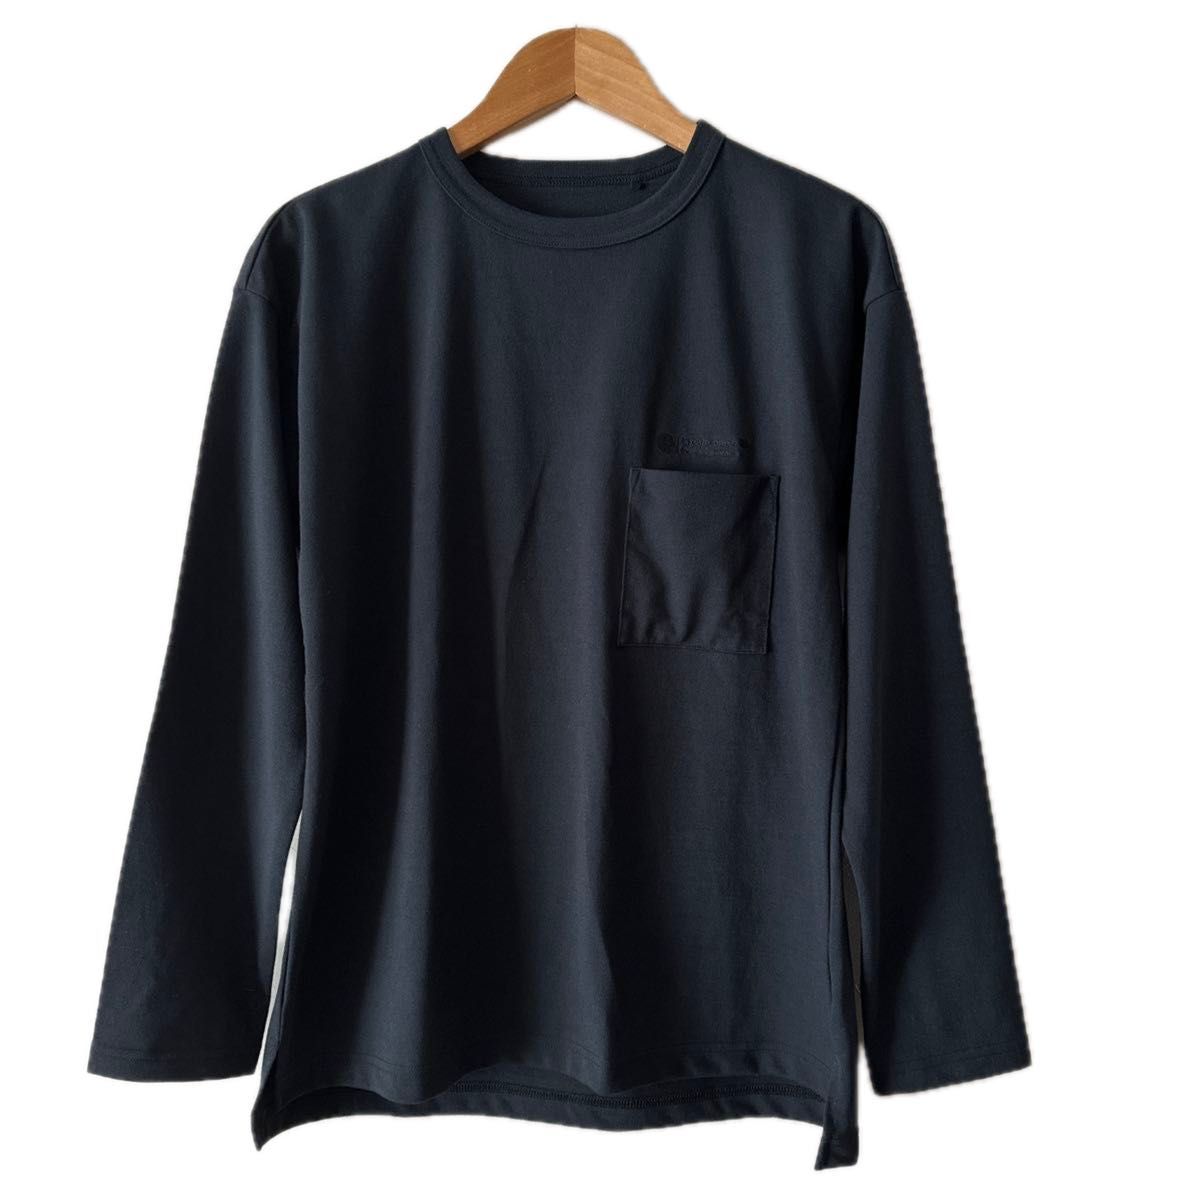 MIZUNO ミズノ メンズロングスリーブクルーネックTシャツ USED XS 大きめ 濃紺 美品 ブラック刺繍ロゴ